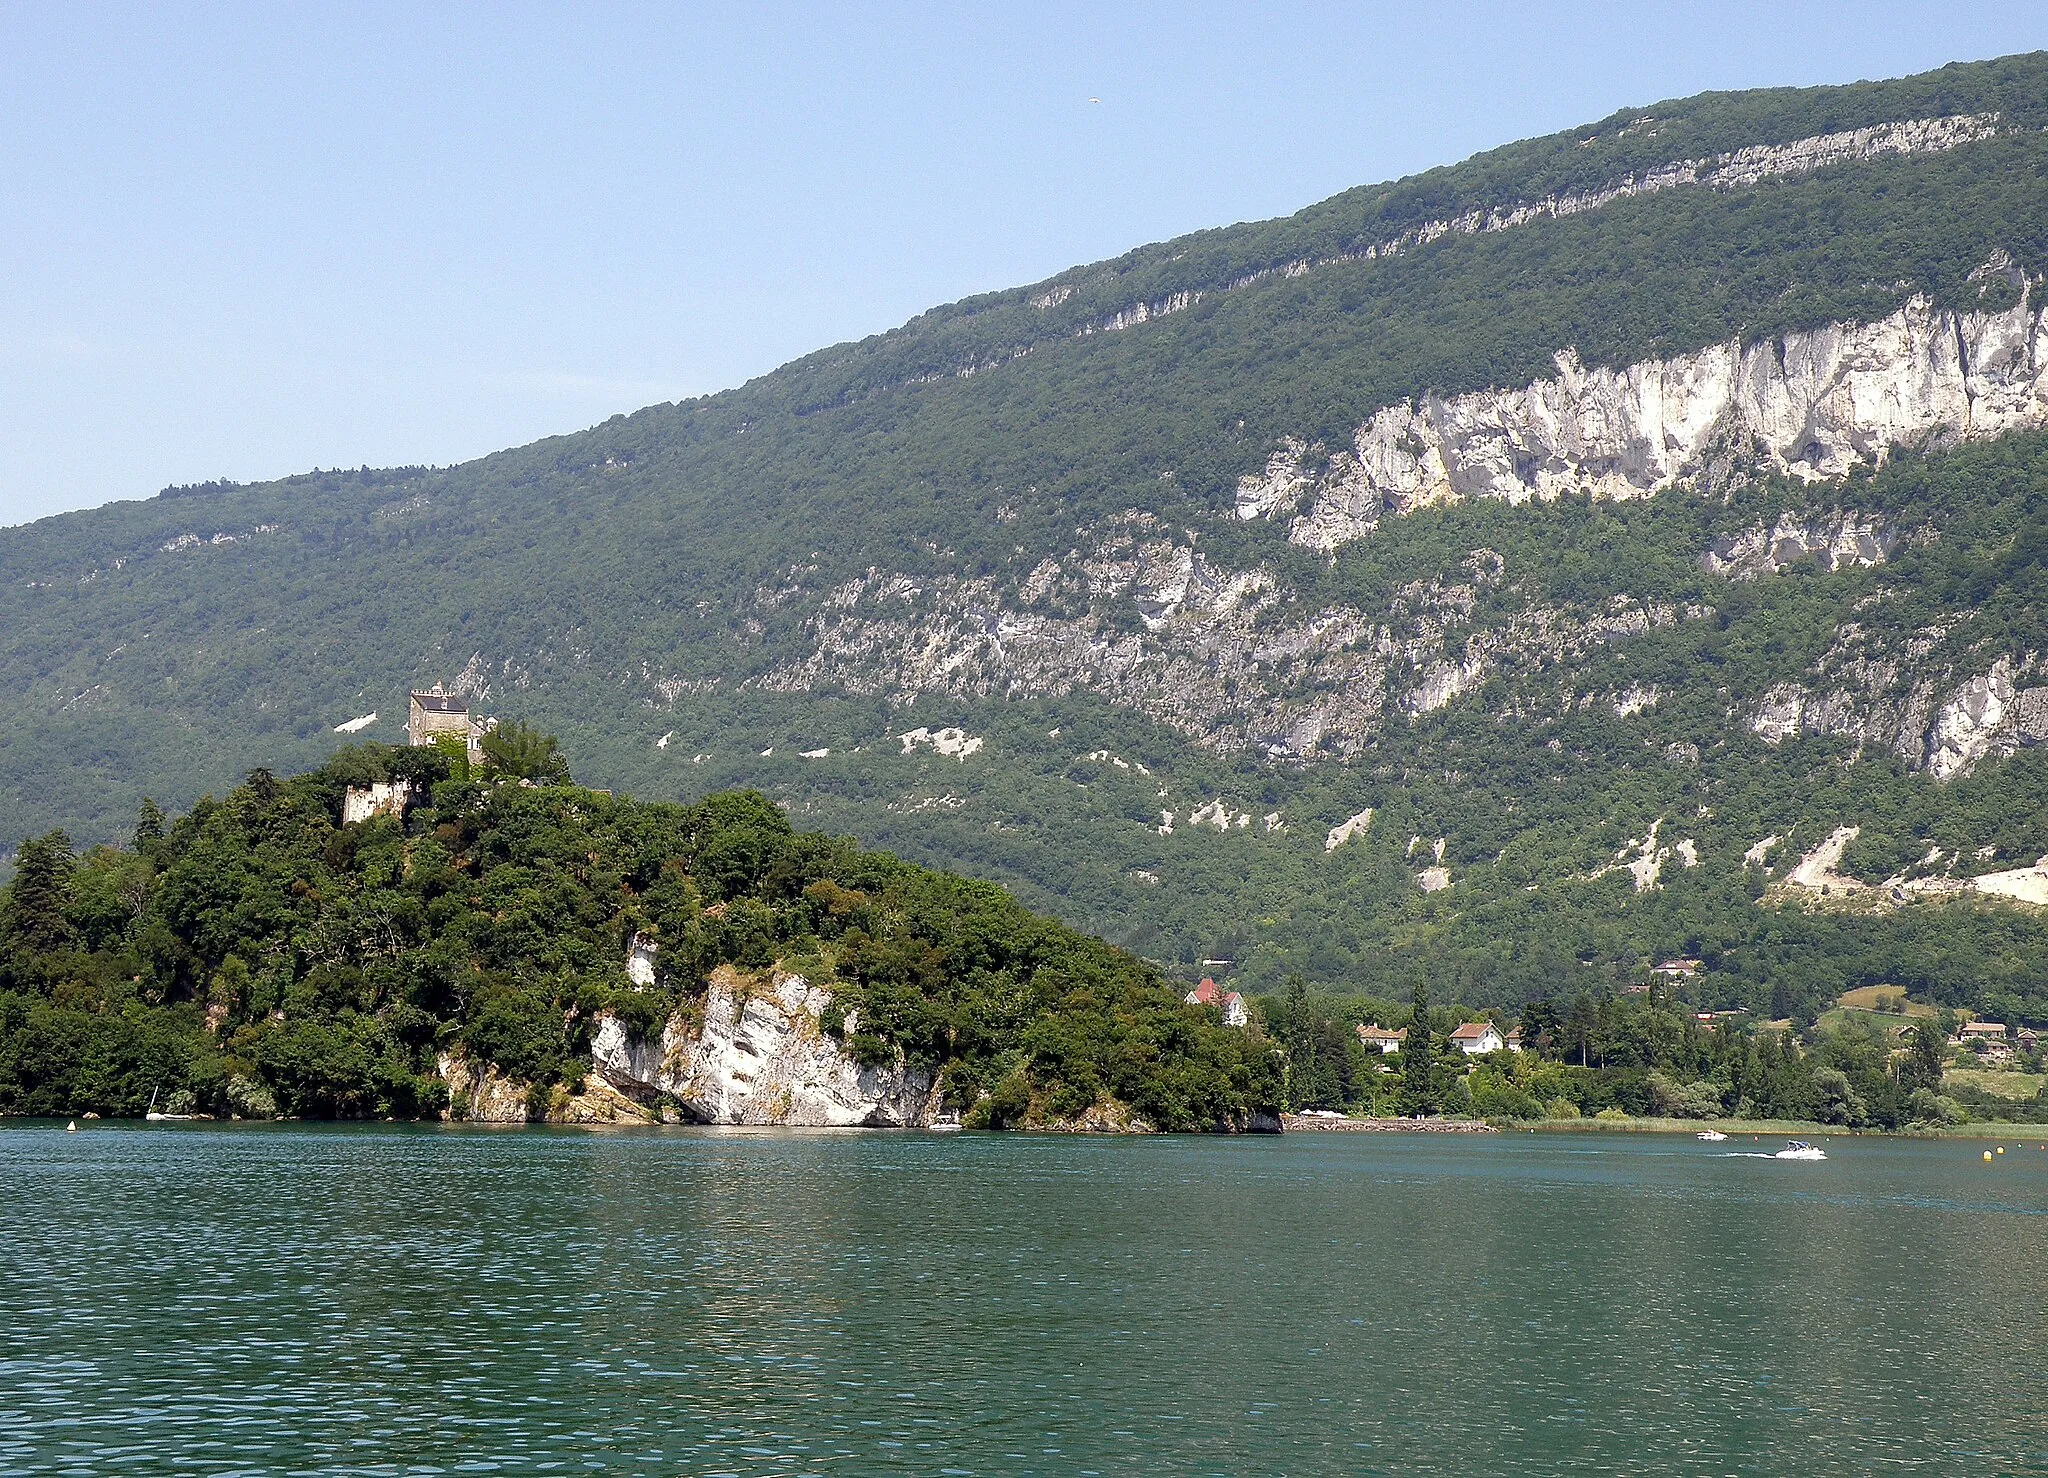 Photo showing: Chindrieux, comm. du département de la Savoie (région Rhône-Alpes, France). Le château de Châtillon, dans le village homonyme, au bord du lac du Bourget. À l’arrière-plan, la montagne de Cessens.